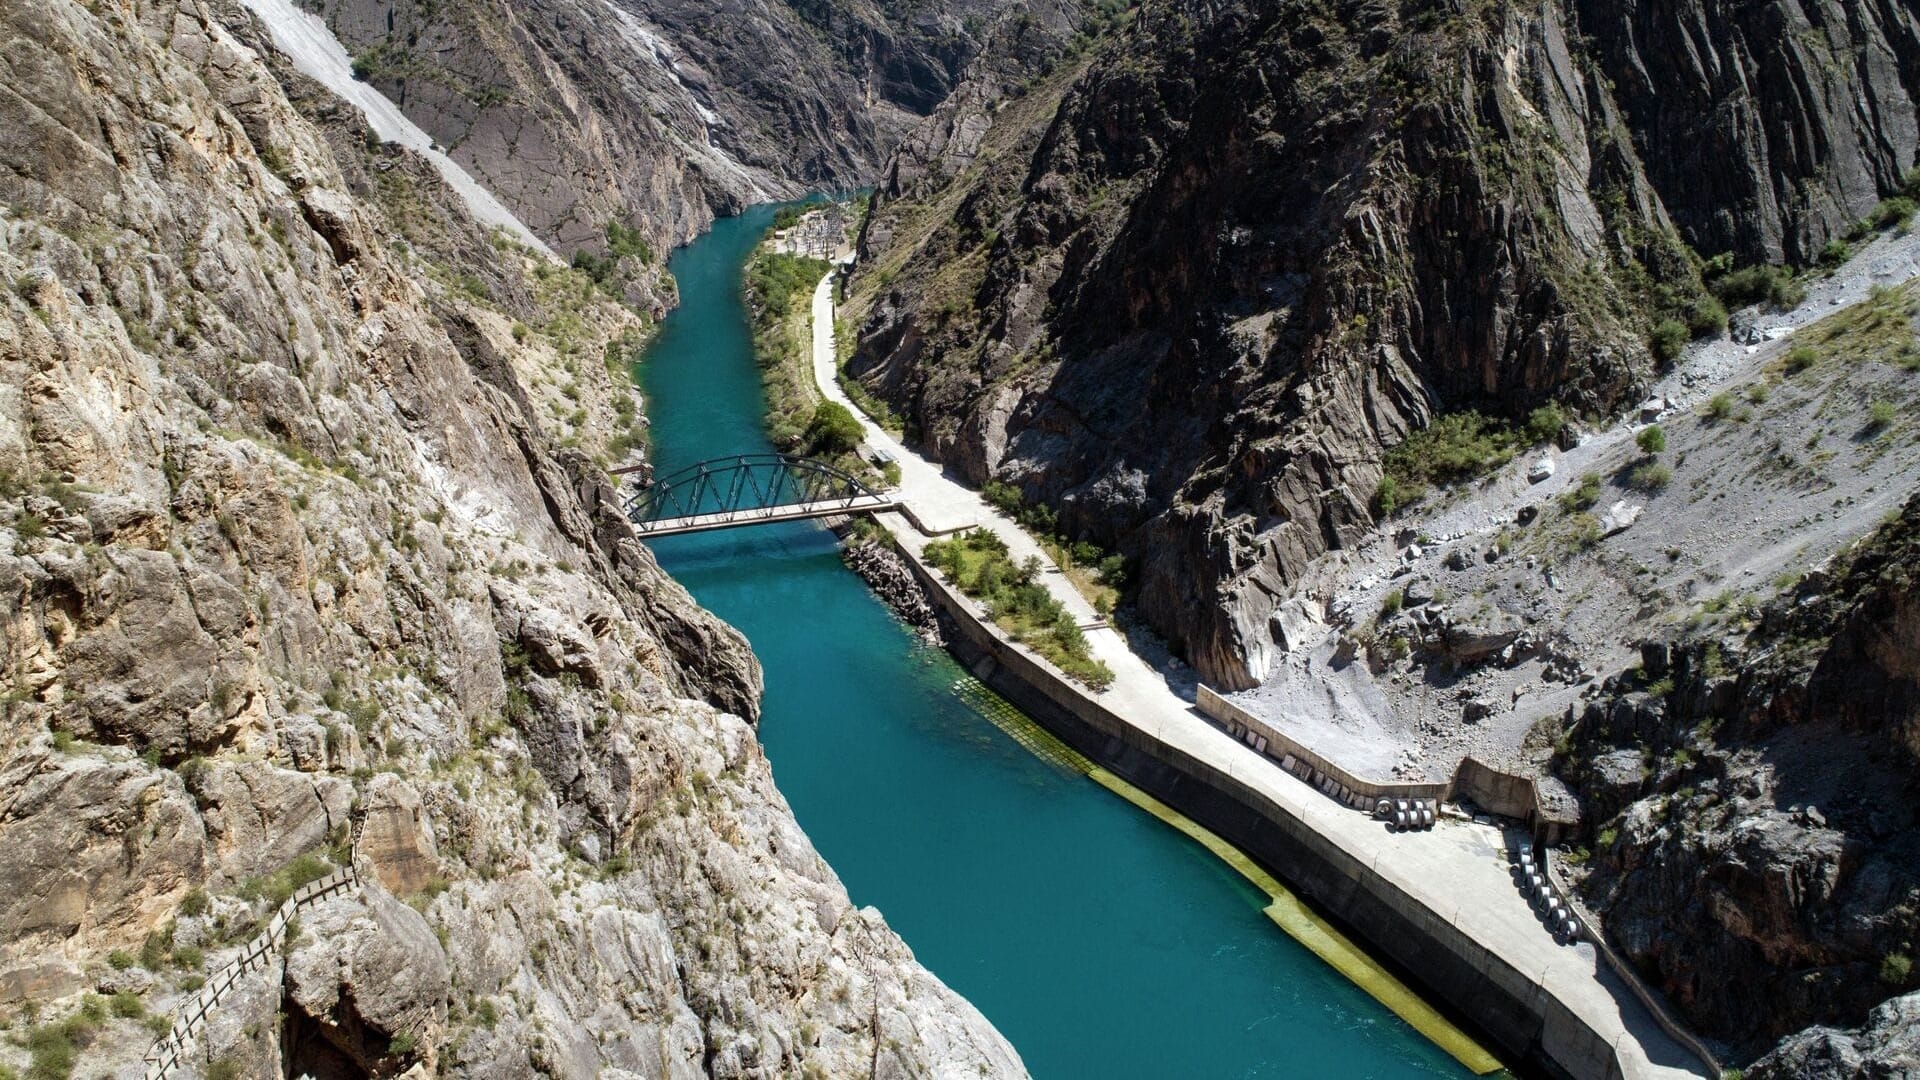 Кыргызстан может экспортировать излишки воды соседям – эксперт